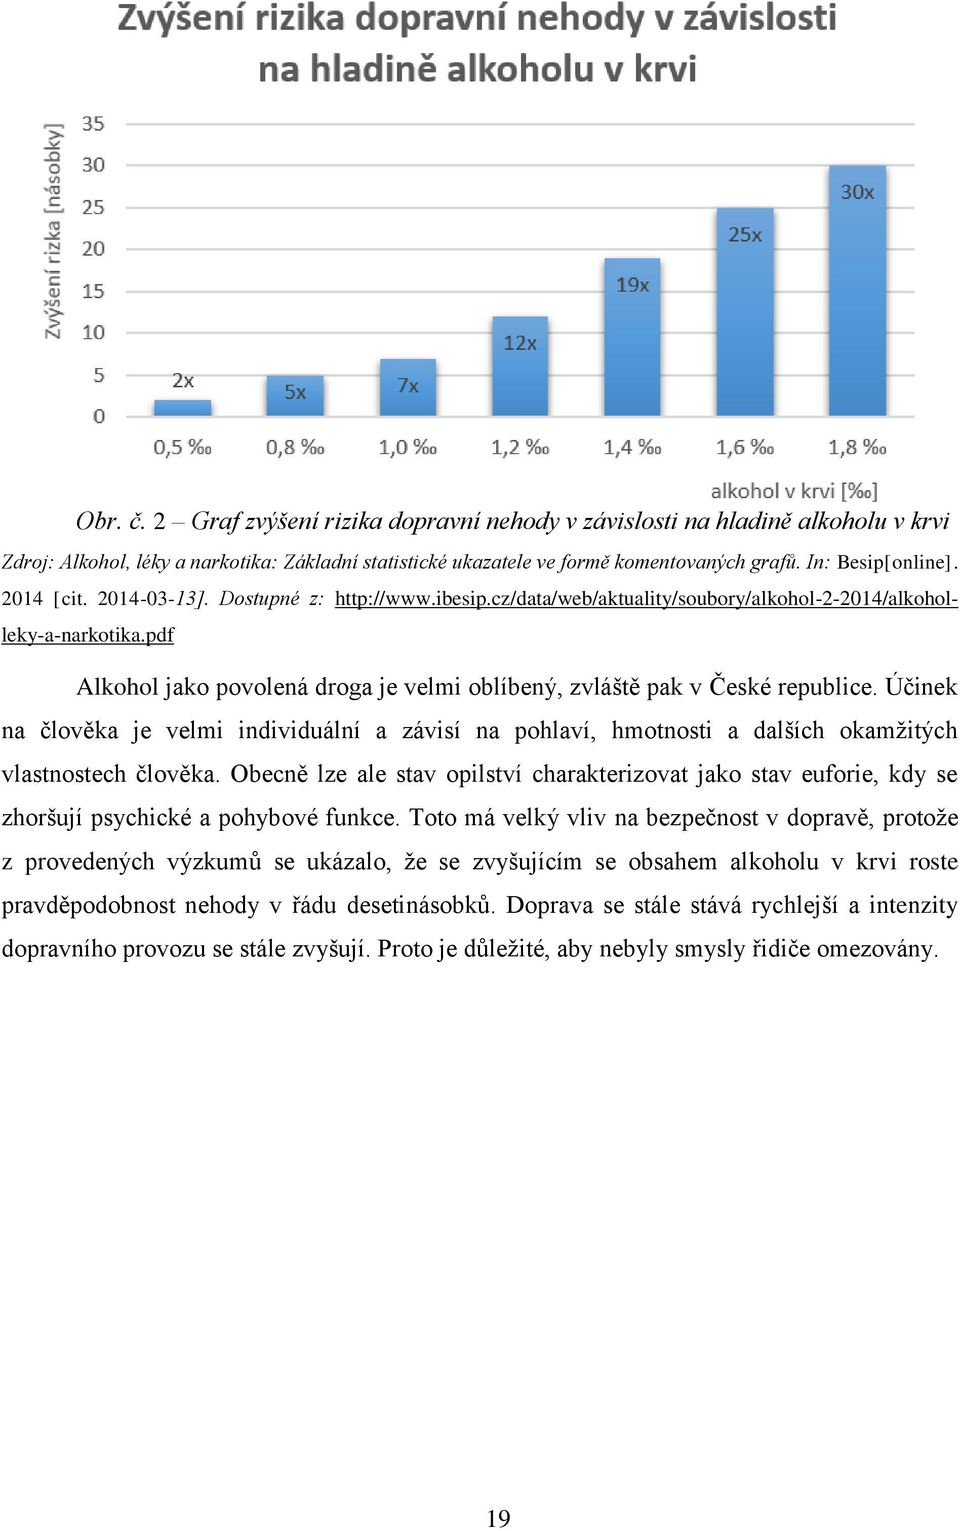 pdf Alkohol jako povolená droga je velmi oblíbený, zvláště pak v České republice. Účinek na člověka je velmi individuální a závisí na pohlaví, hmotnosti a dalších okamžitých vlastnostech člověka.